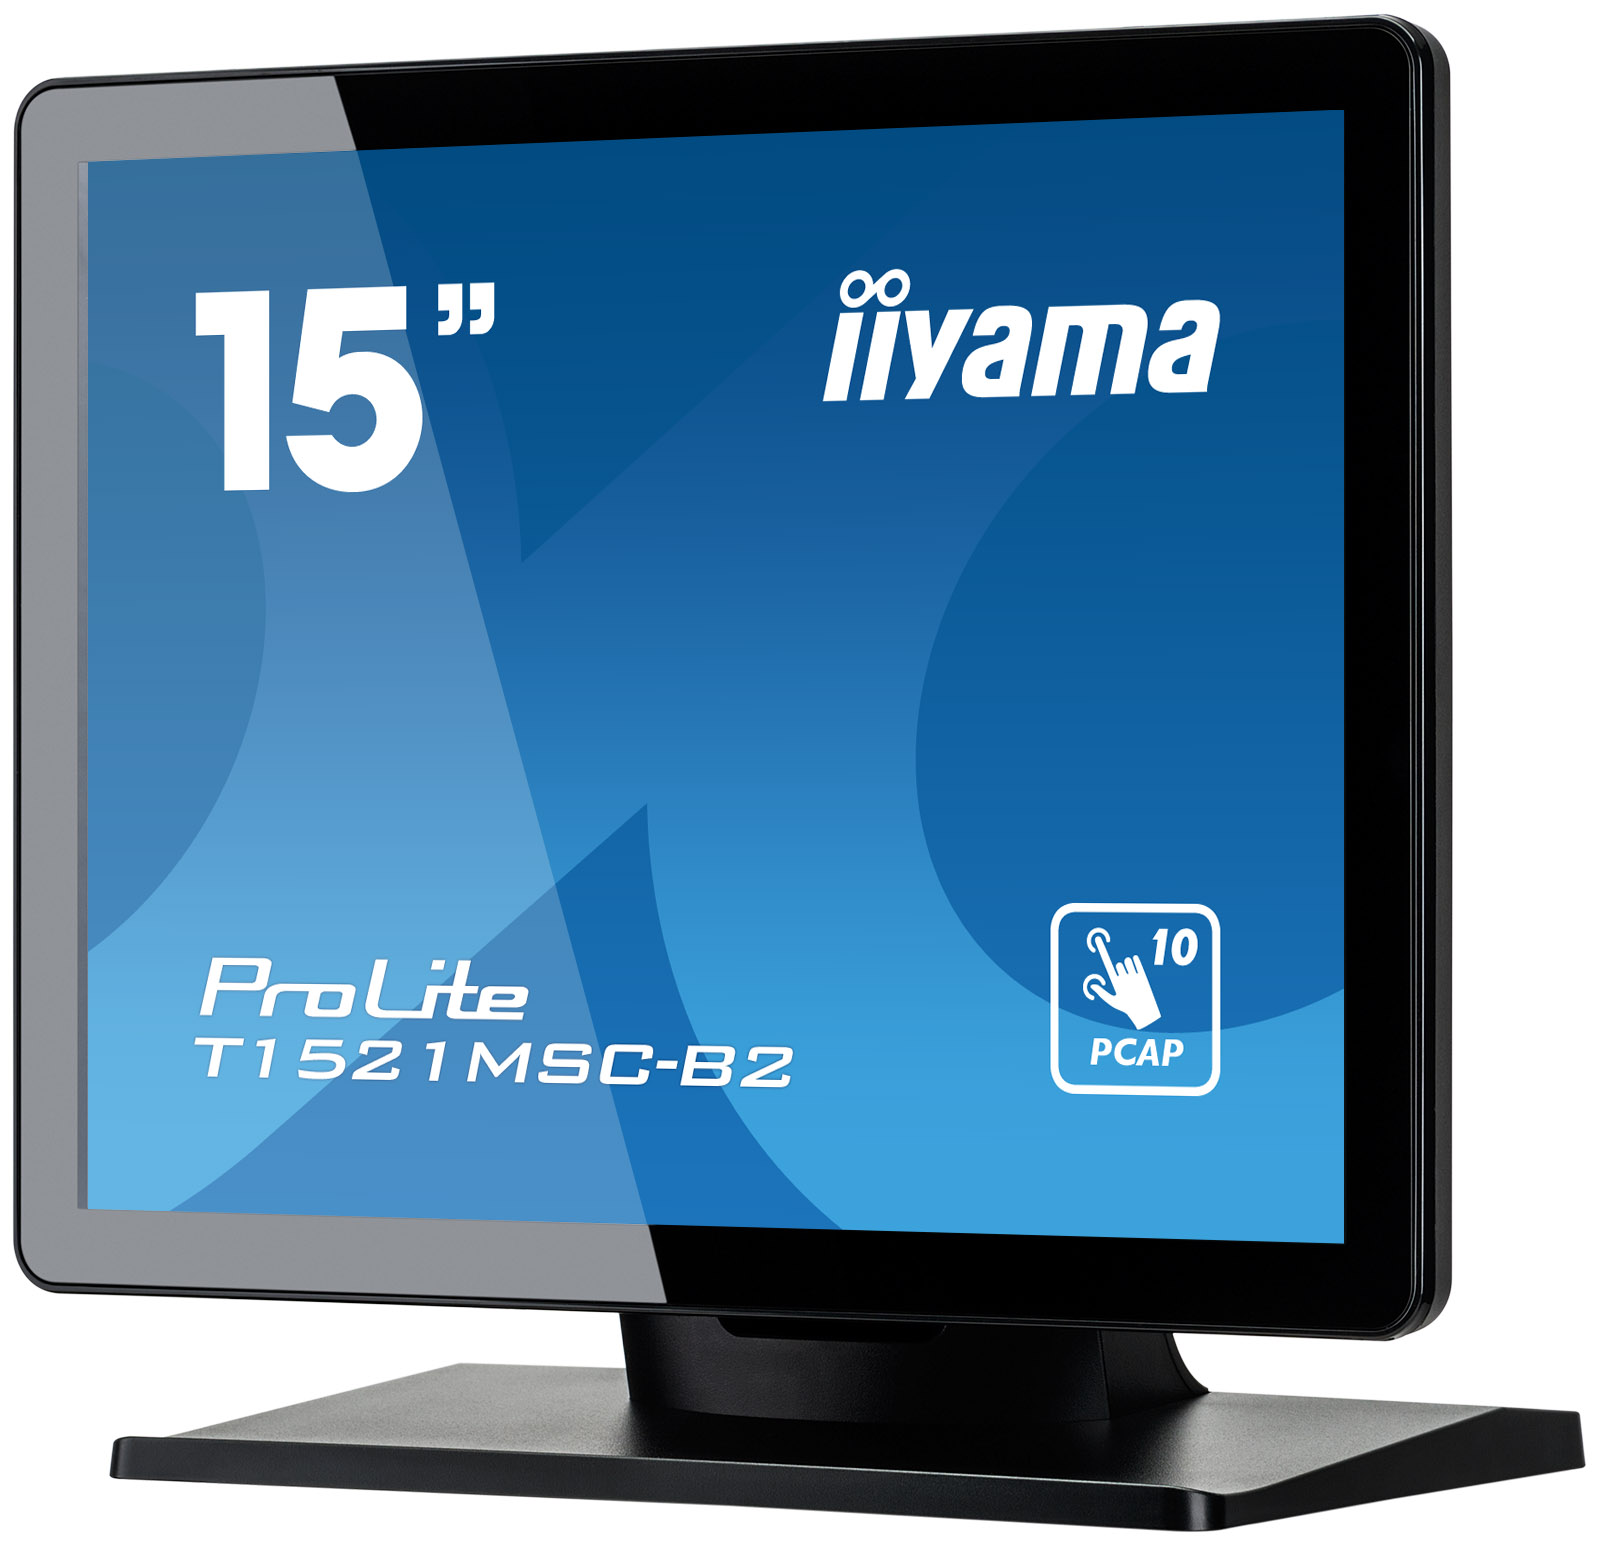 15" iiyama T1521MSC-B2:IPS, XGA, PCAP, HDMI 